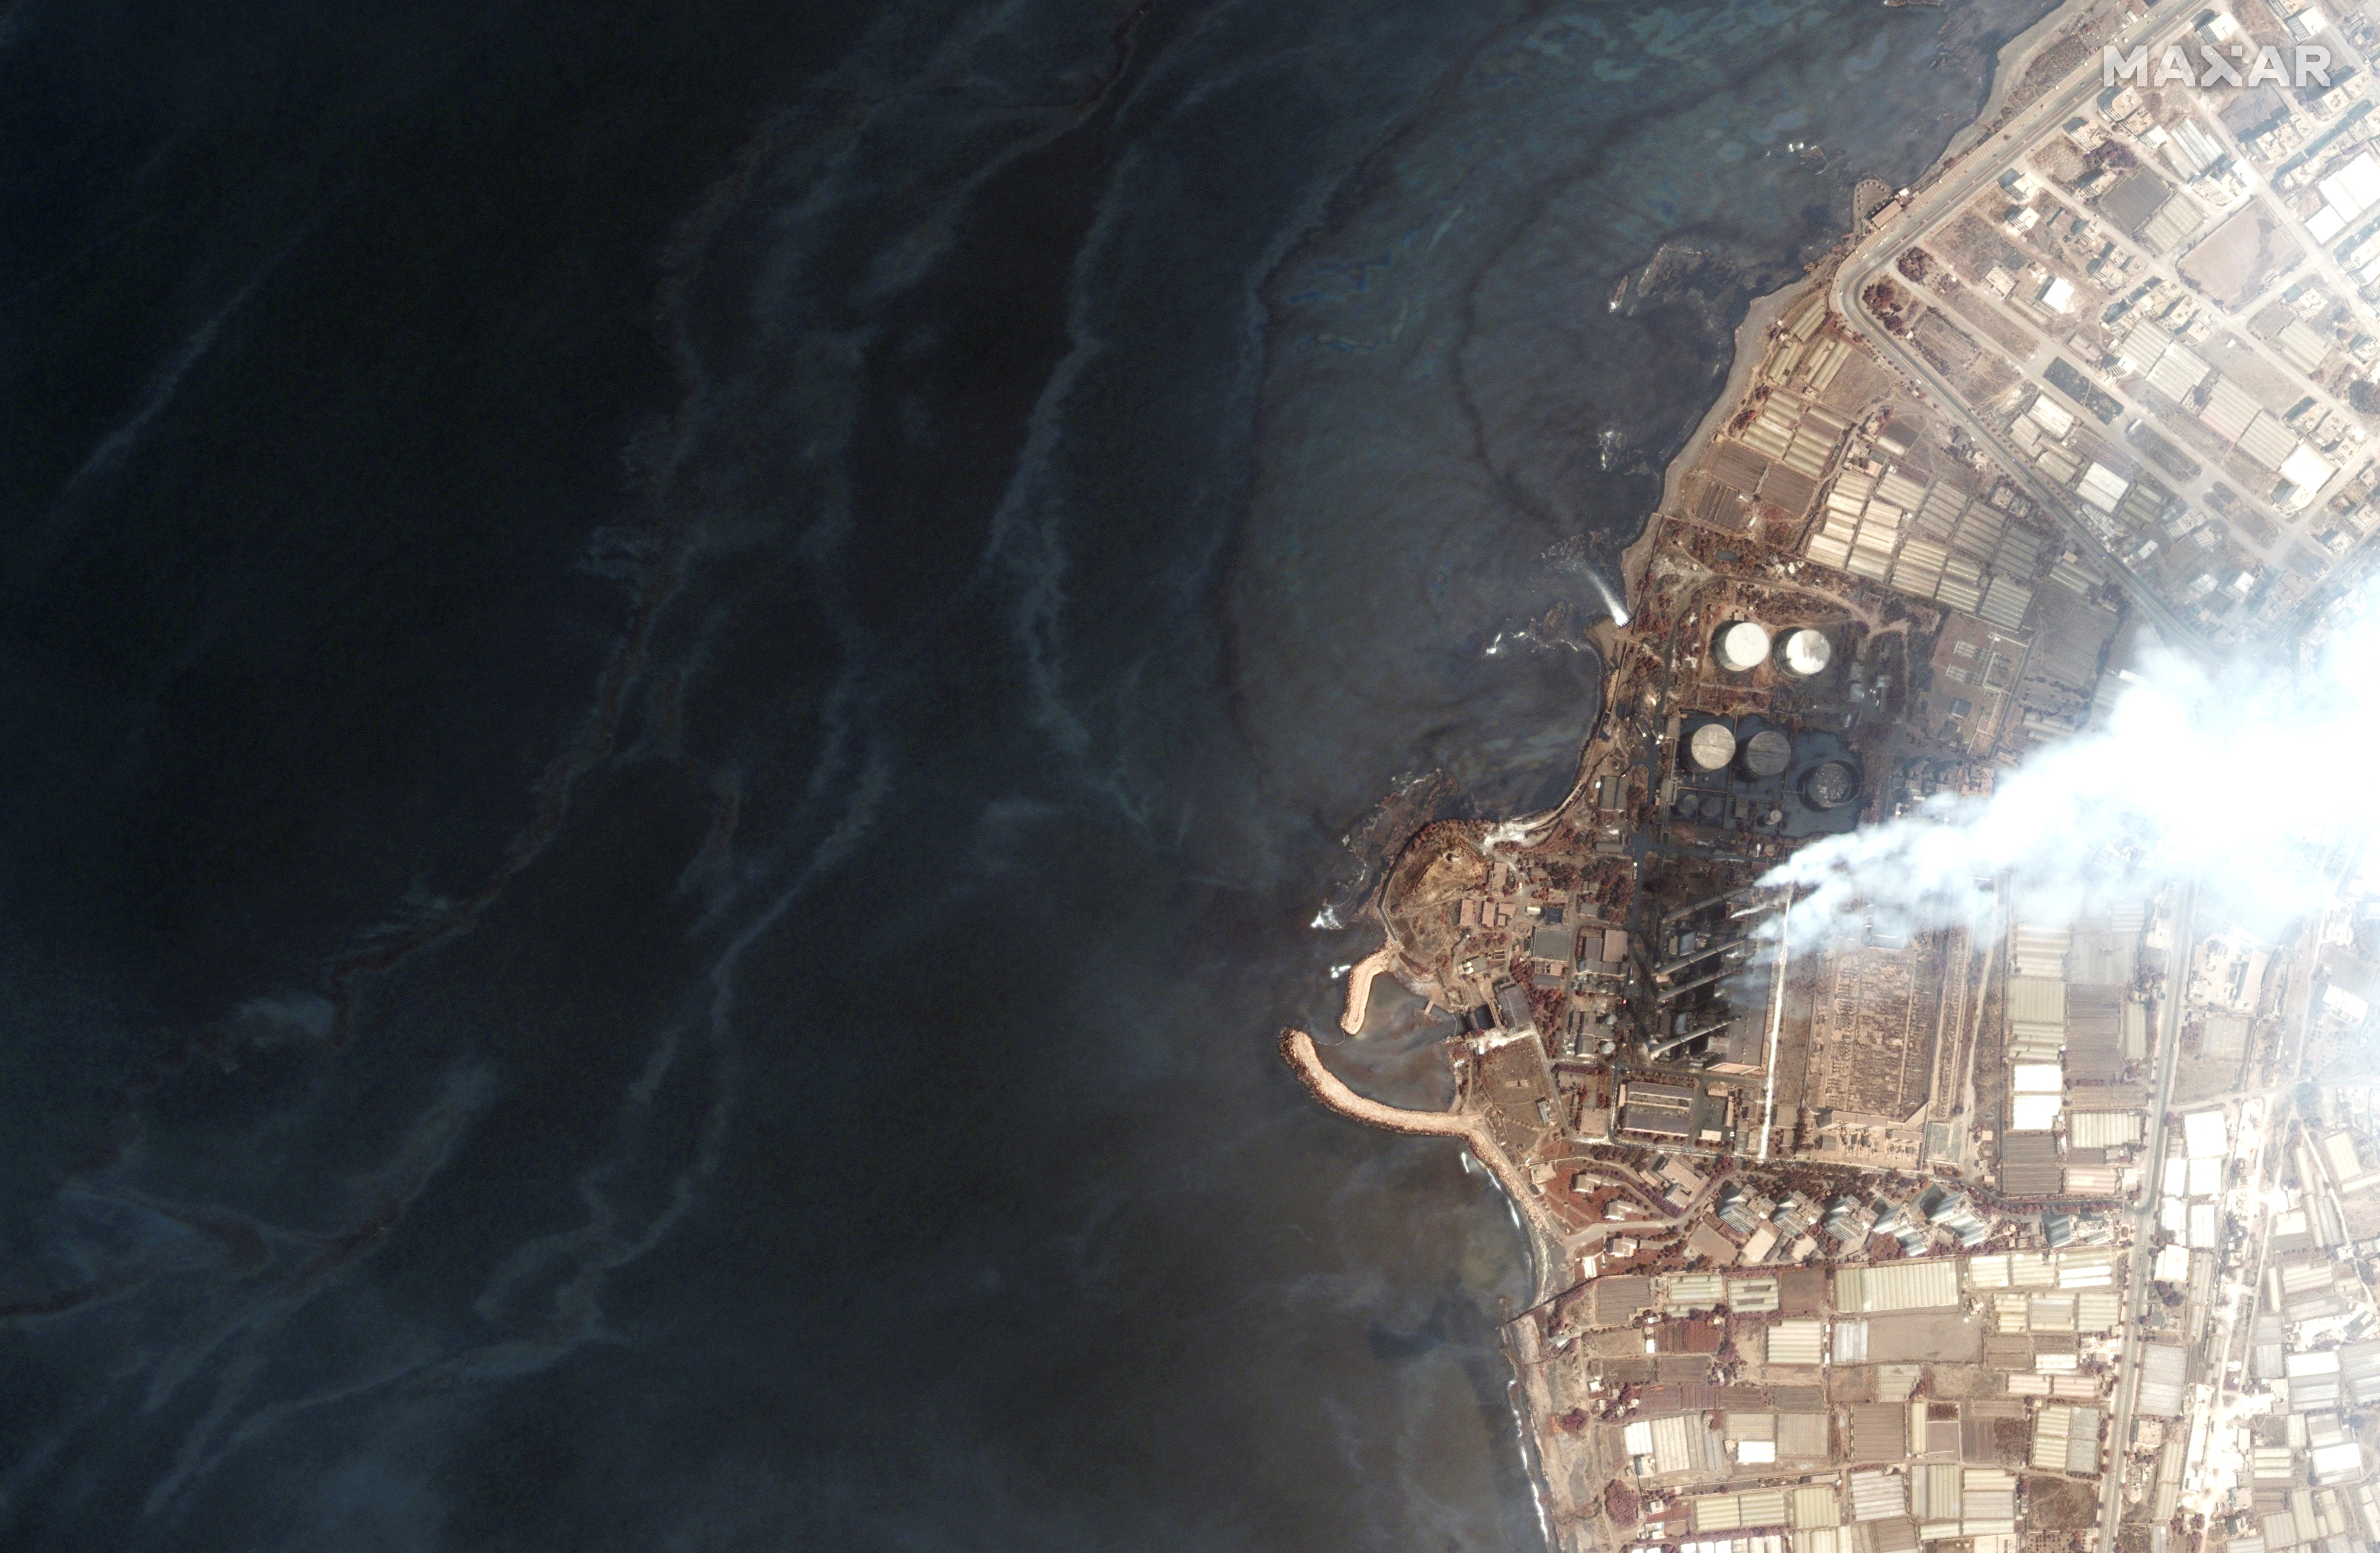 Una imagen de satélite muestra la central eléctrica de Baniyas en Baniyas, Siria, y la marea negra en el mar Mediterráneo, el 28 de agosto de 2021. Fotografía tomada el 28 de agosto de 2021. (Maxar Technologies/REUTERS)